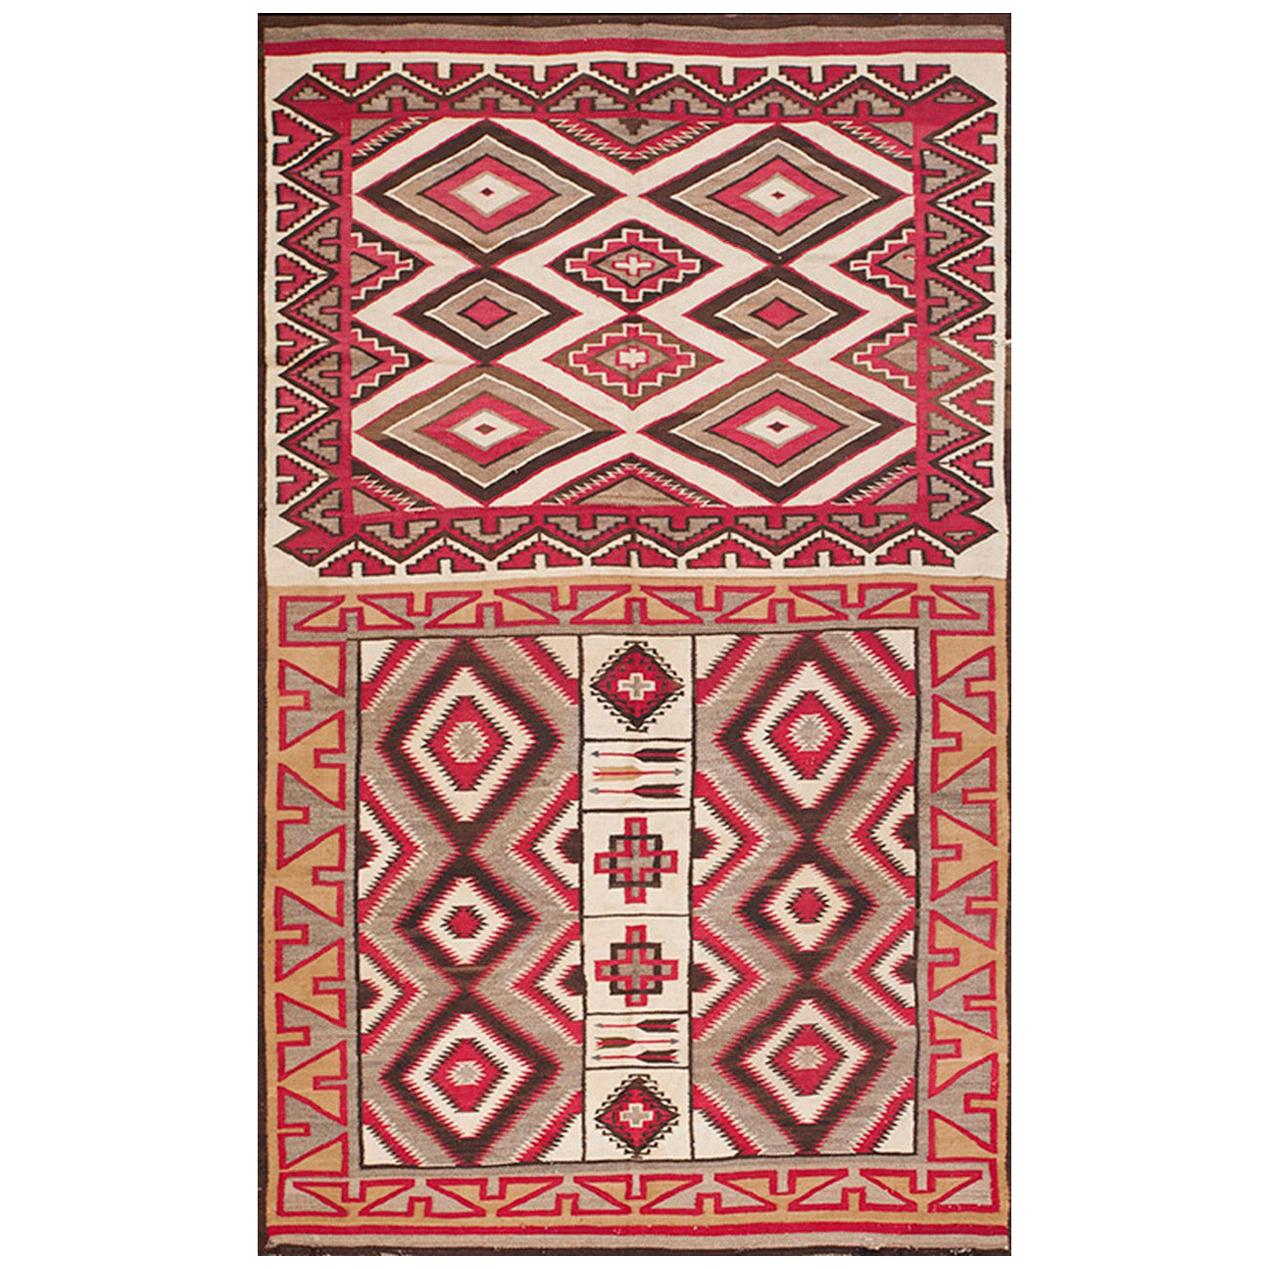 Amerikanischer Navajo-Teppich aus dem frühen 20. Jahrhundert ( 4'9" x 7'6" - 145 x 230 )